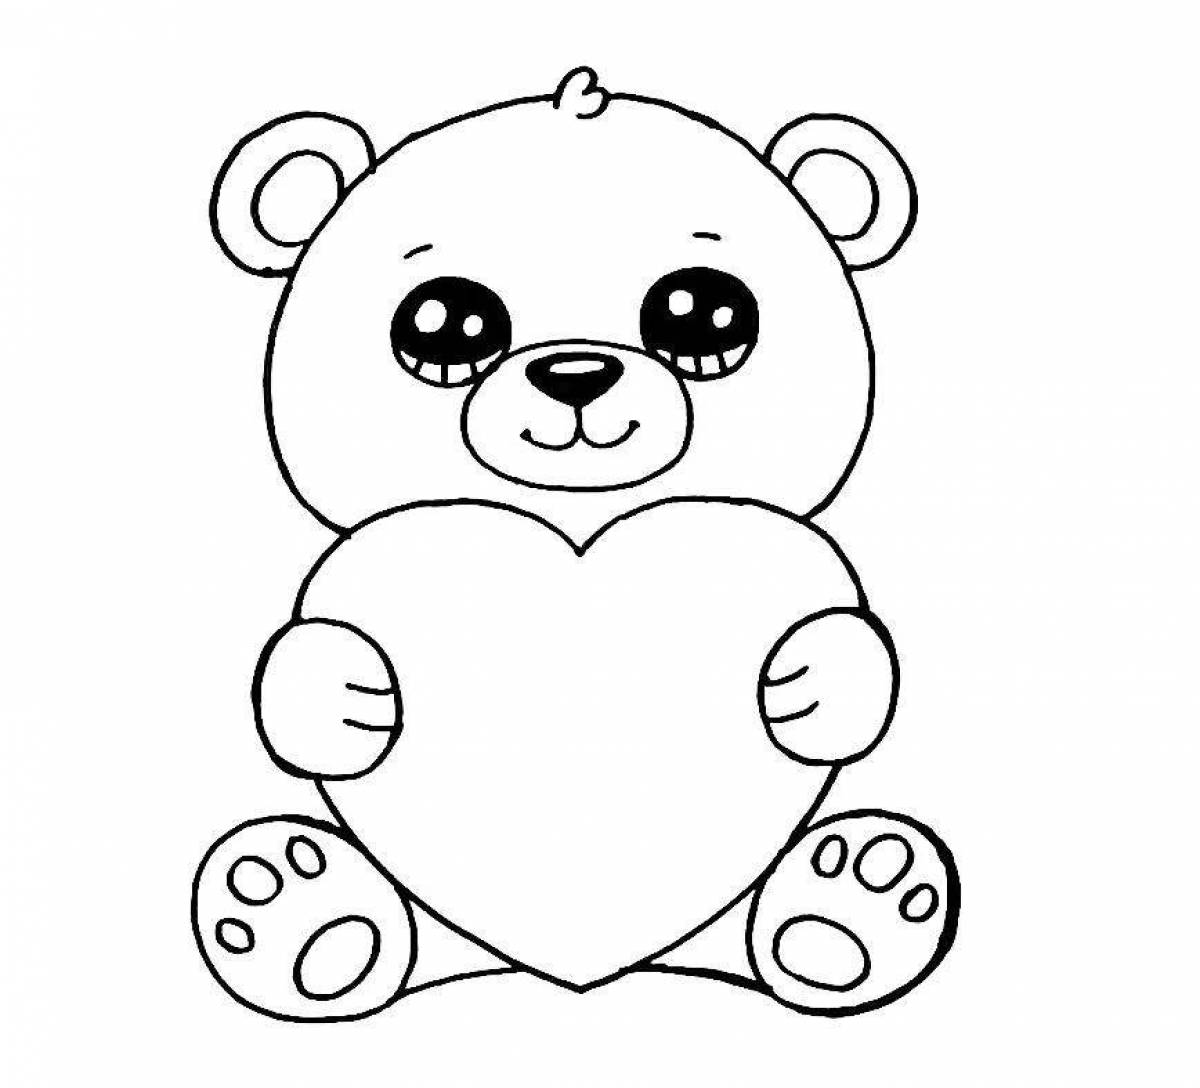 Cute cute bear coloring book